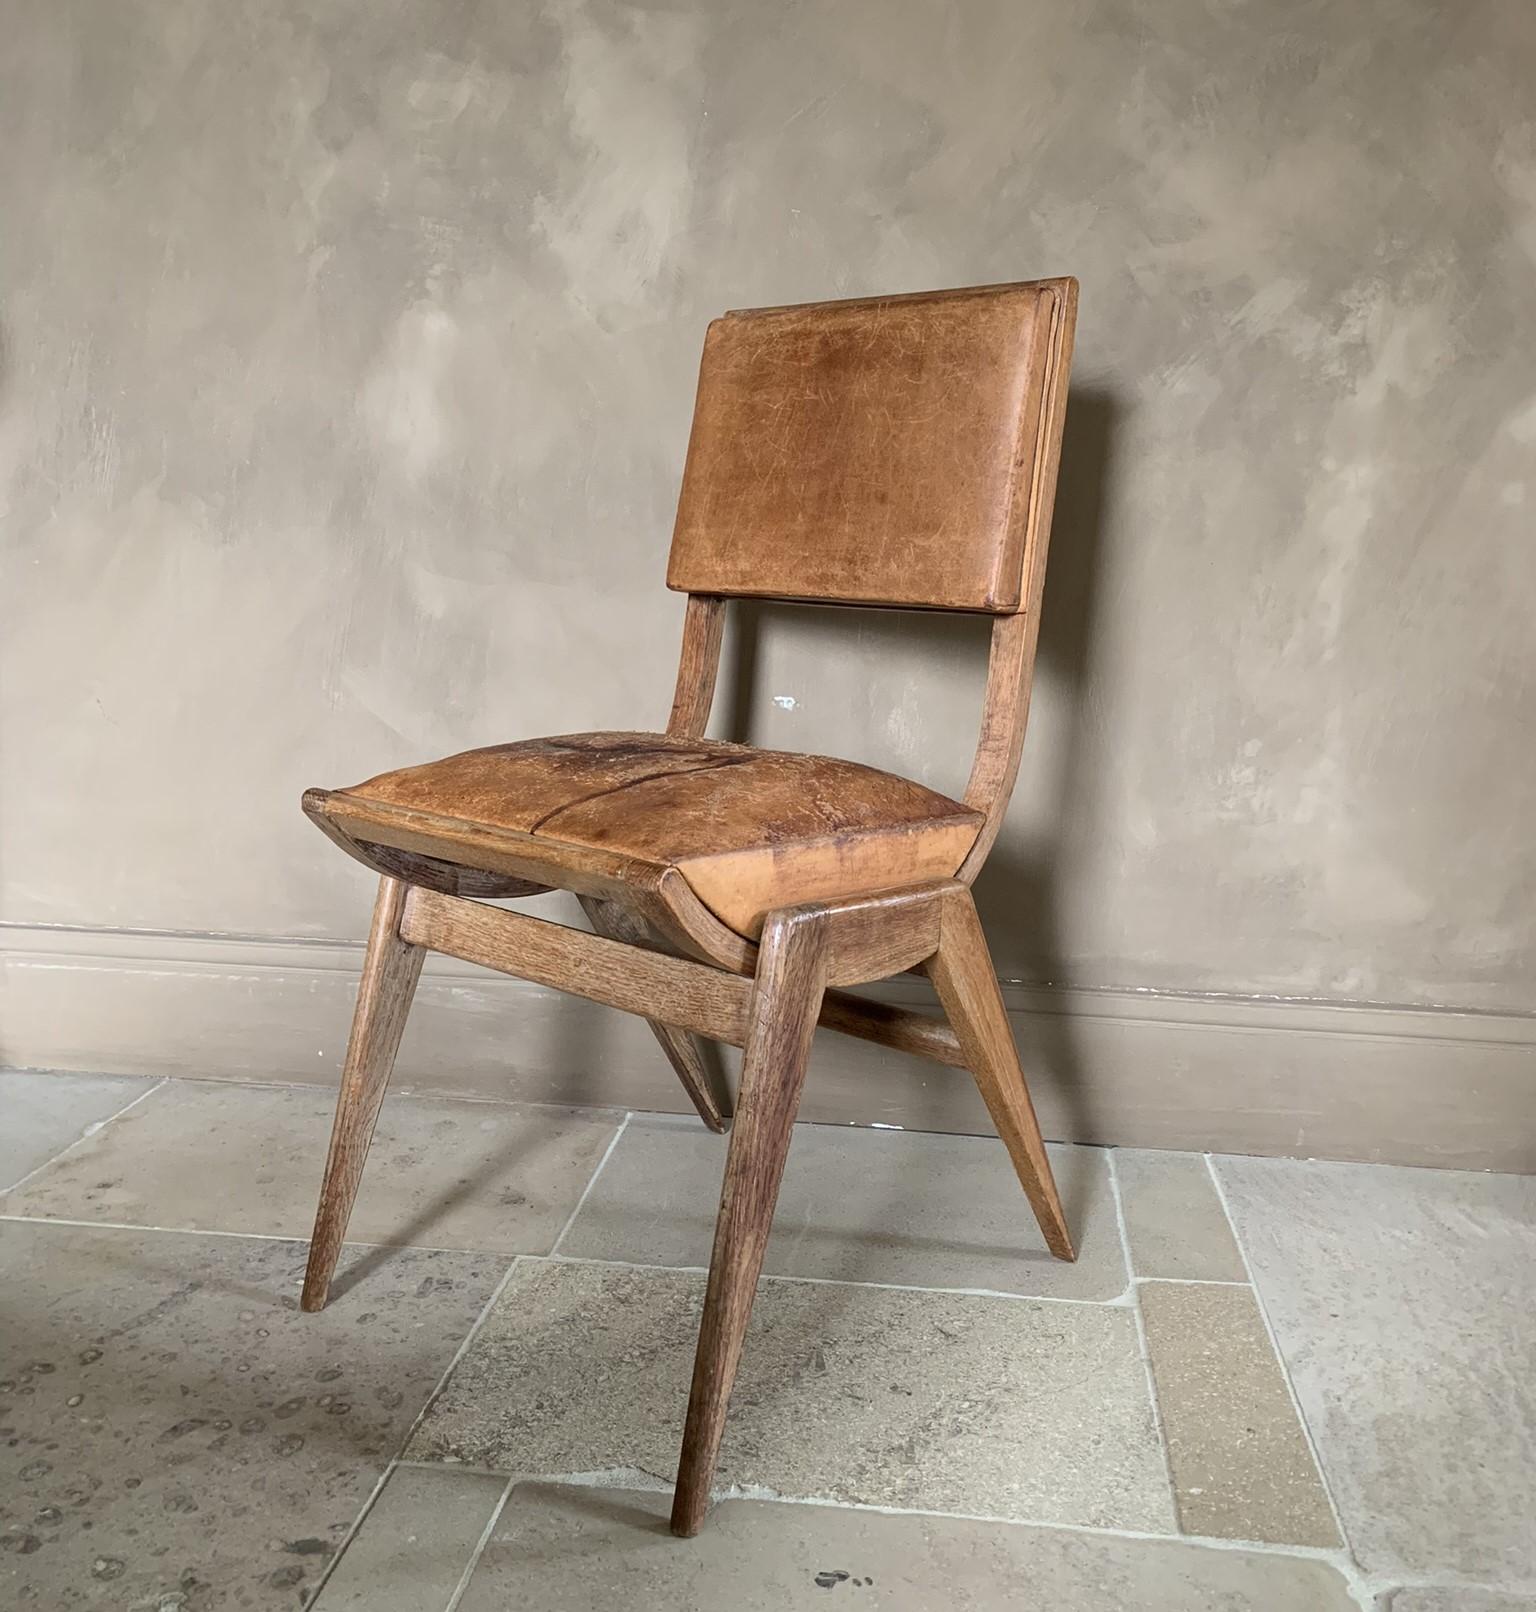 Dieser modernistische Stuhl aus der Mitte des Jahrhunderts ist in jeder Hinsicht perfekt. Die Verarbeitungsqualität ist außergewöhnlich und wurde wahrscheinlich von einem Meister ausgeführt. Da er komplett aus massiver Eiche gefertigt ist und die